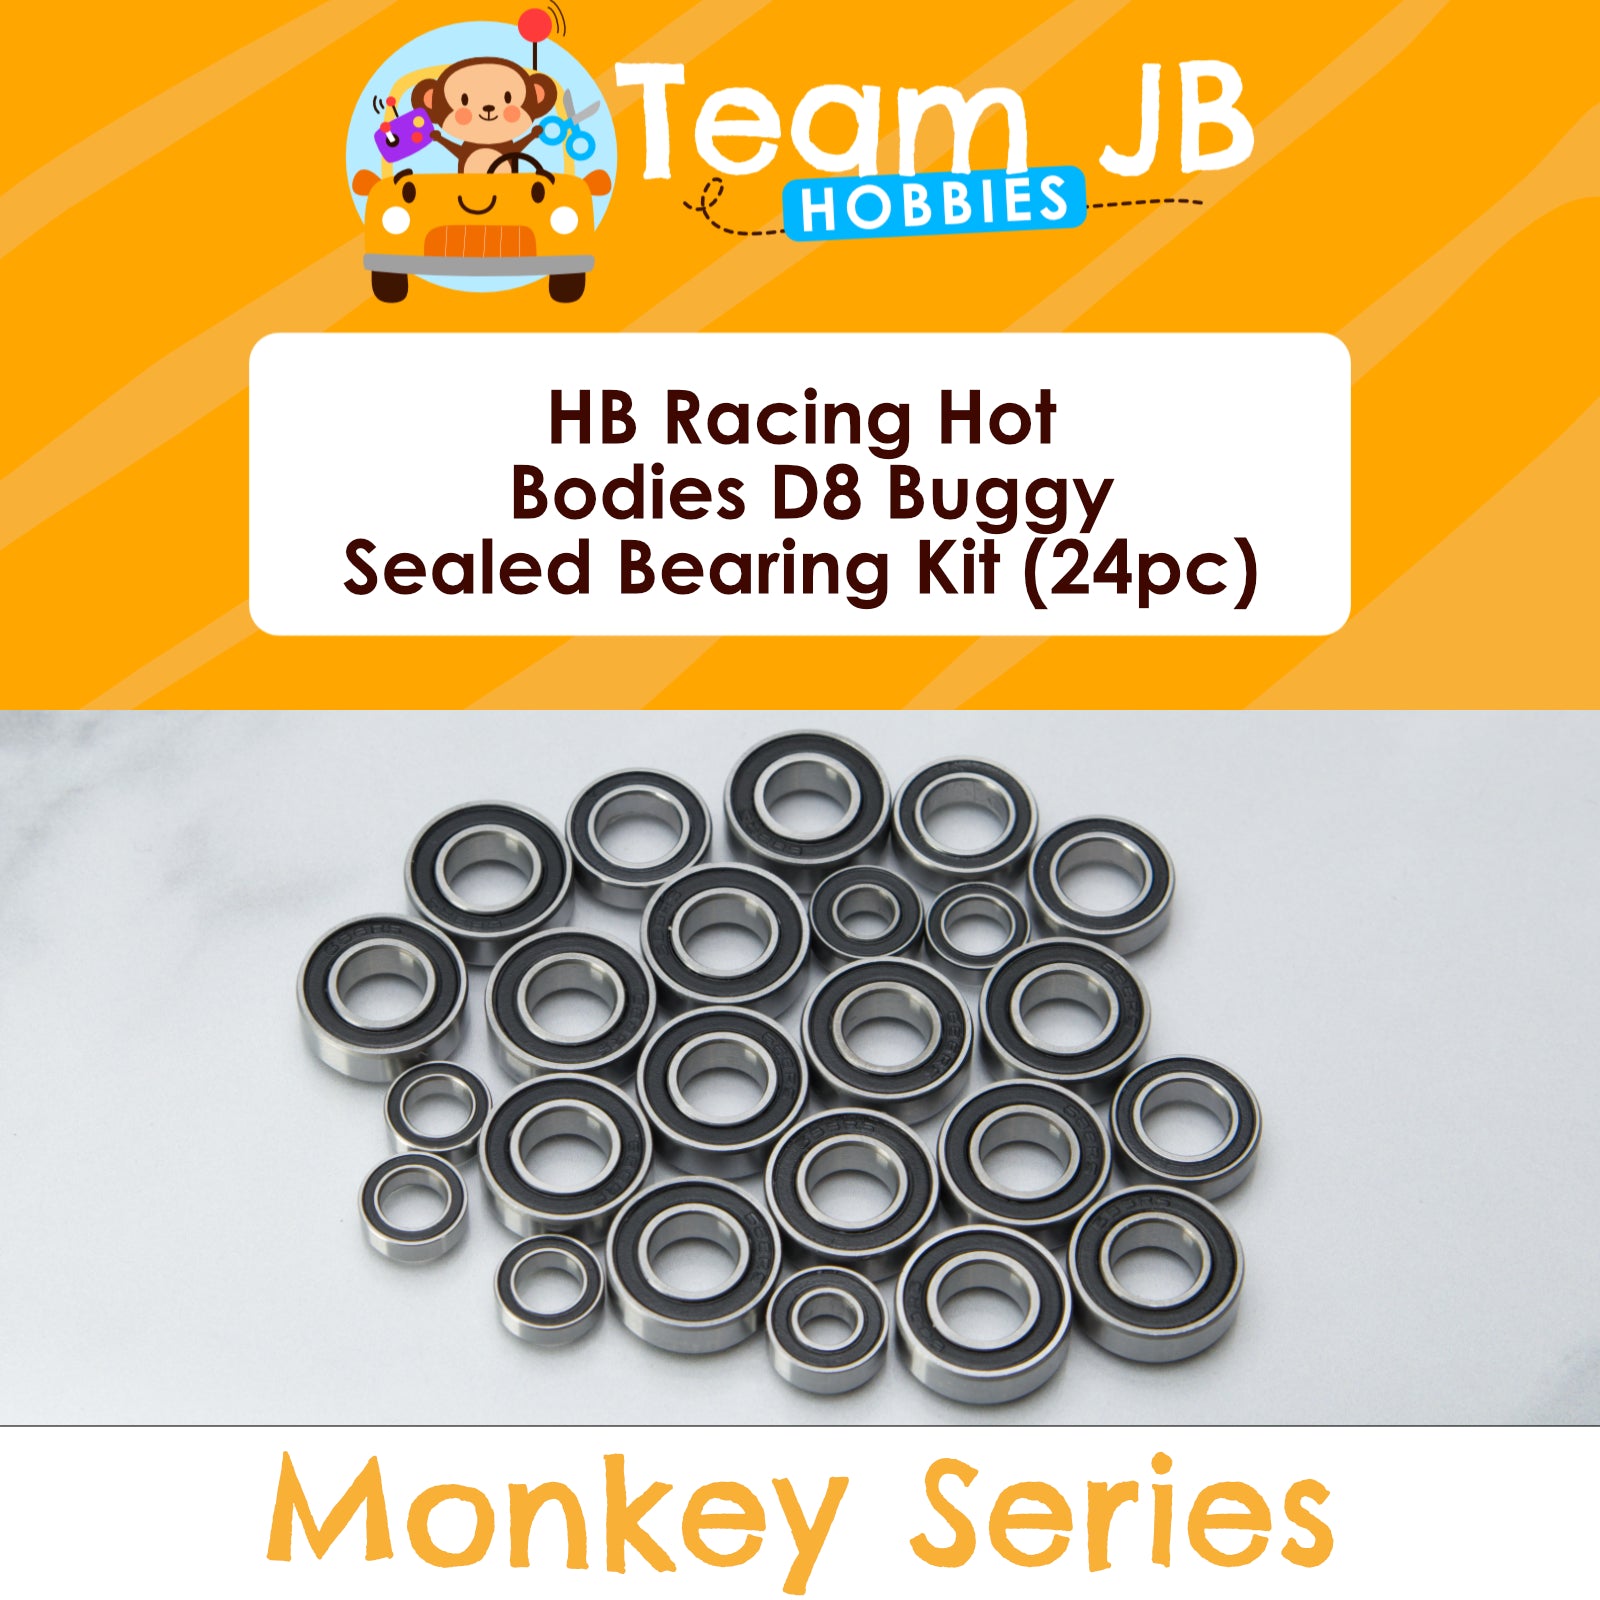 HB Racing Hot Bodies D8 Buggy - Sealed Bearing Kit